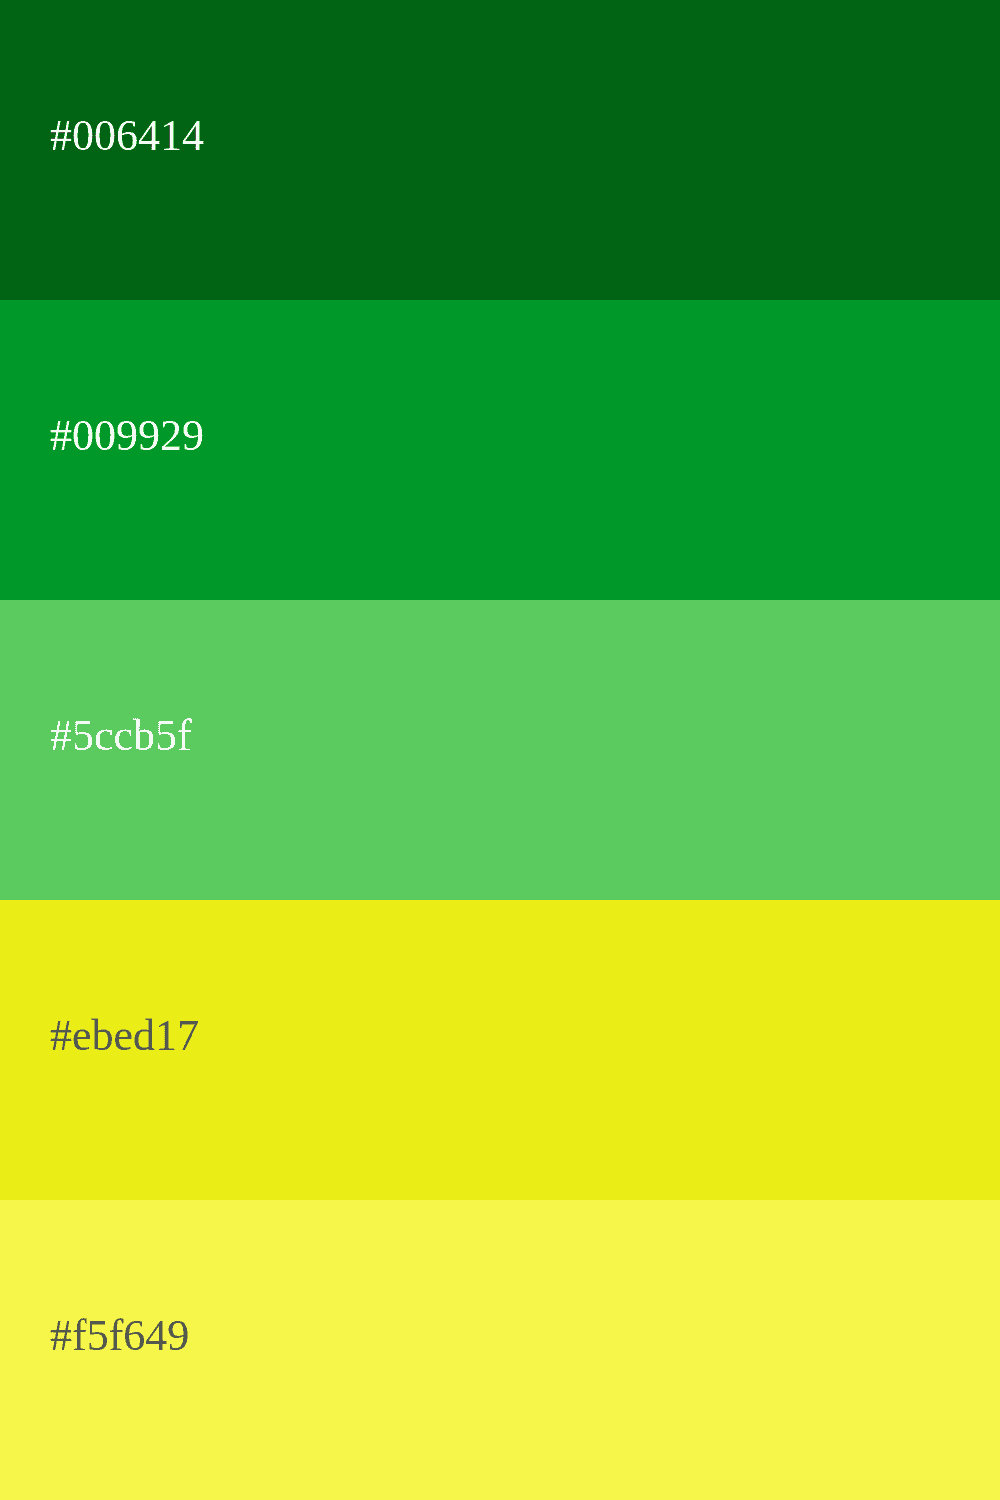 couleur verte et jaune